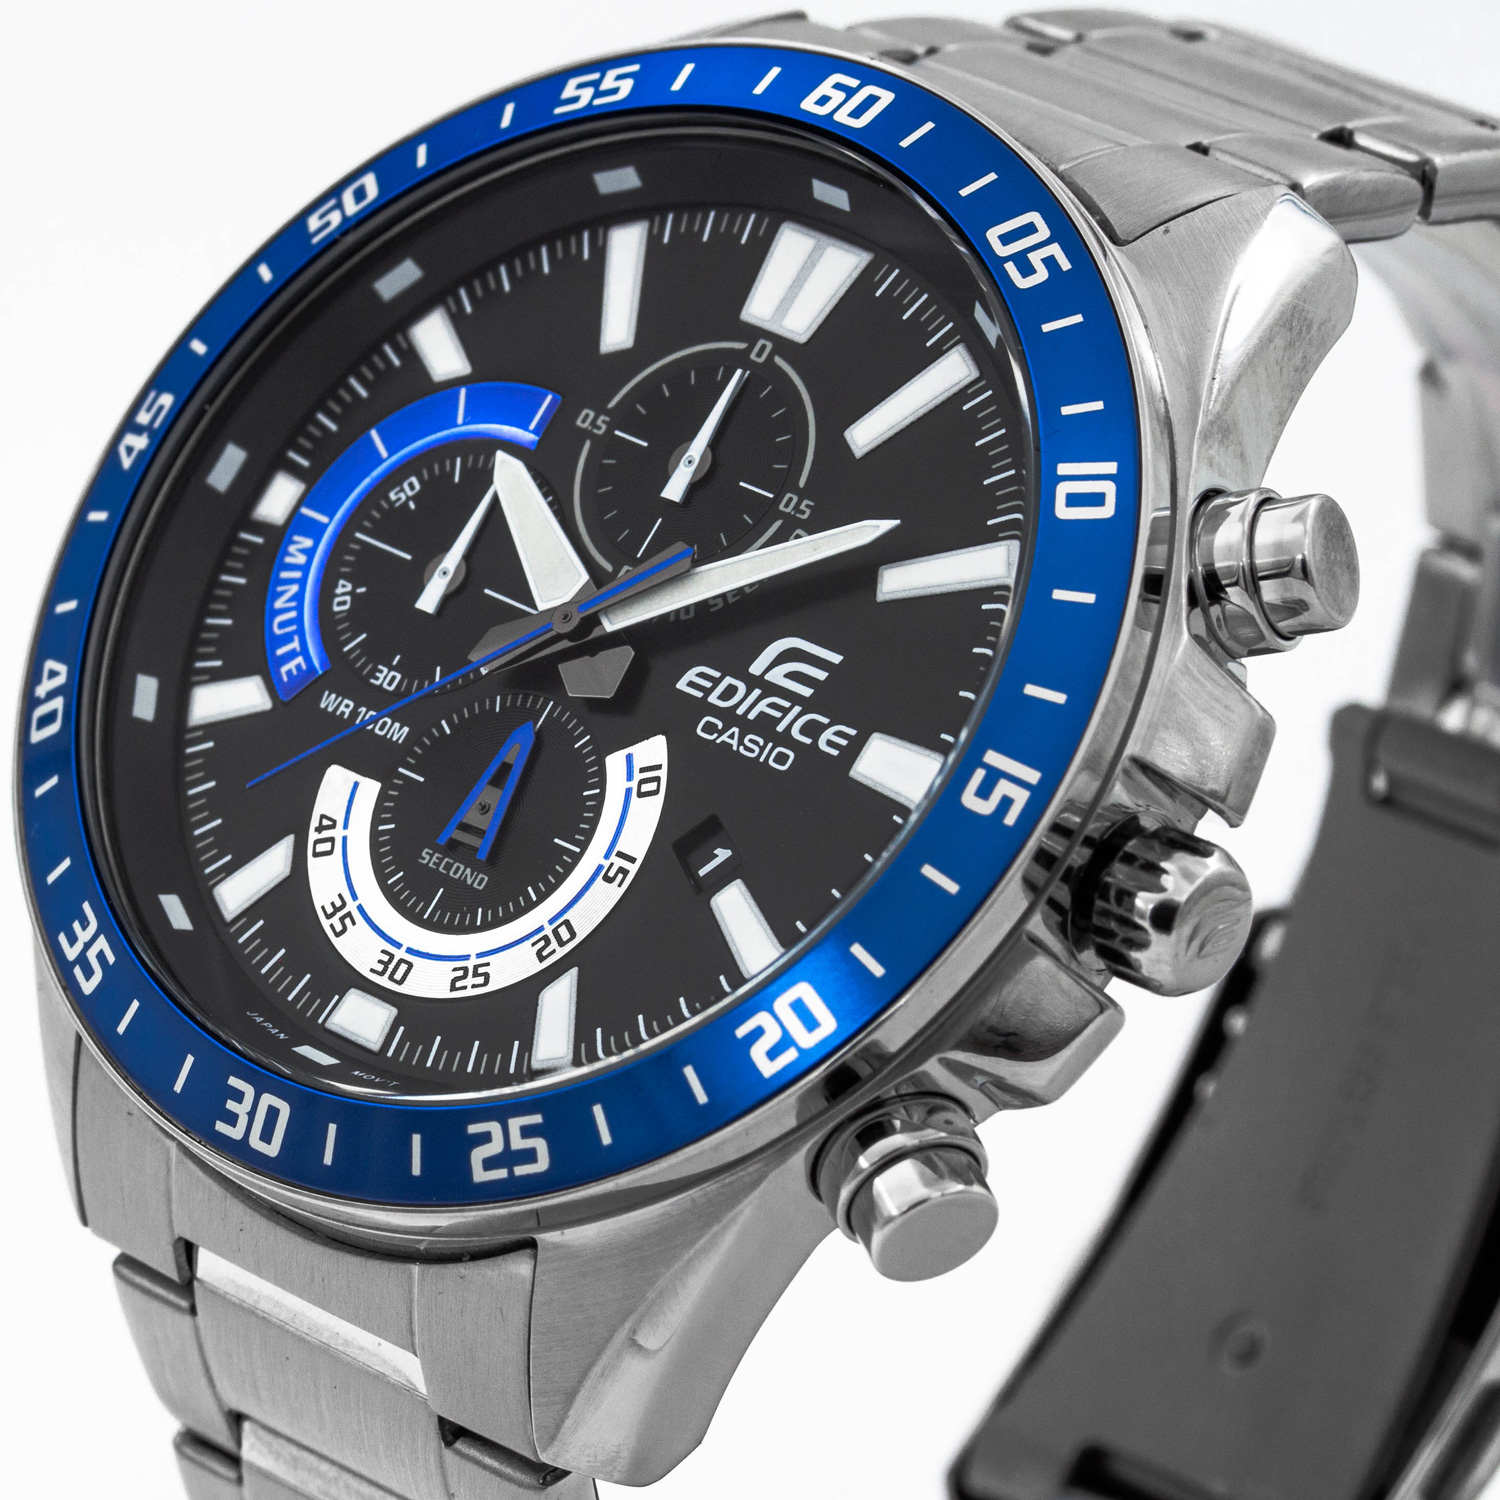 Часы Casio EFV-620D-1A2VUEF - купить мужские наручные часы в  интернет-магазине Bestwatch.ru. Цена, фото, характеристики. - с доставкой  по